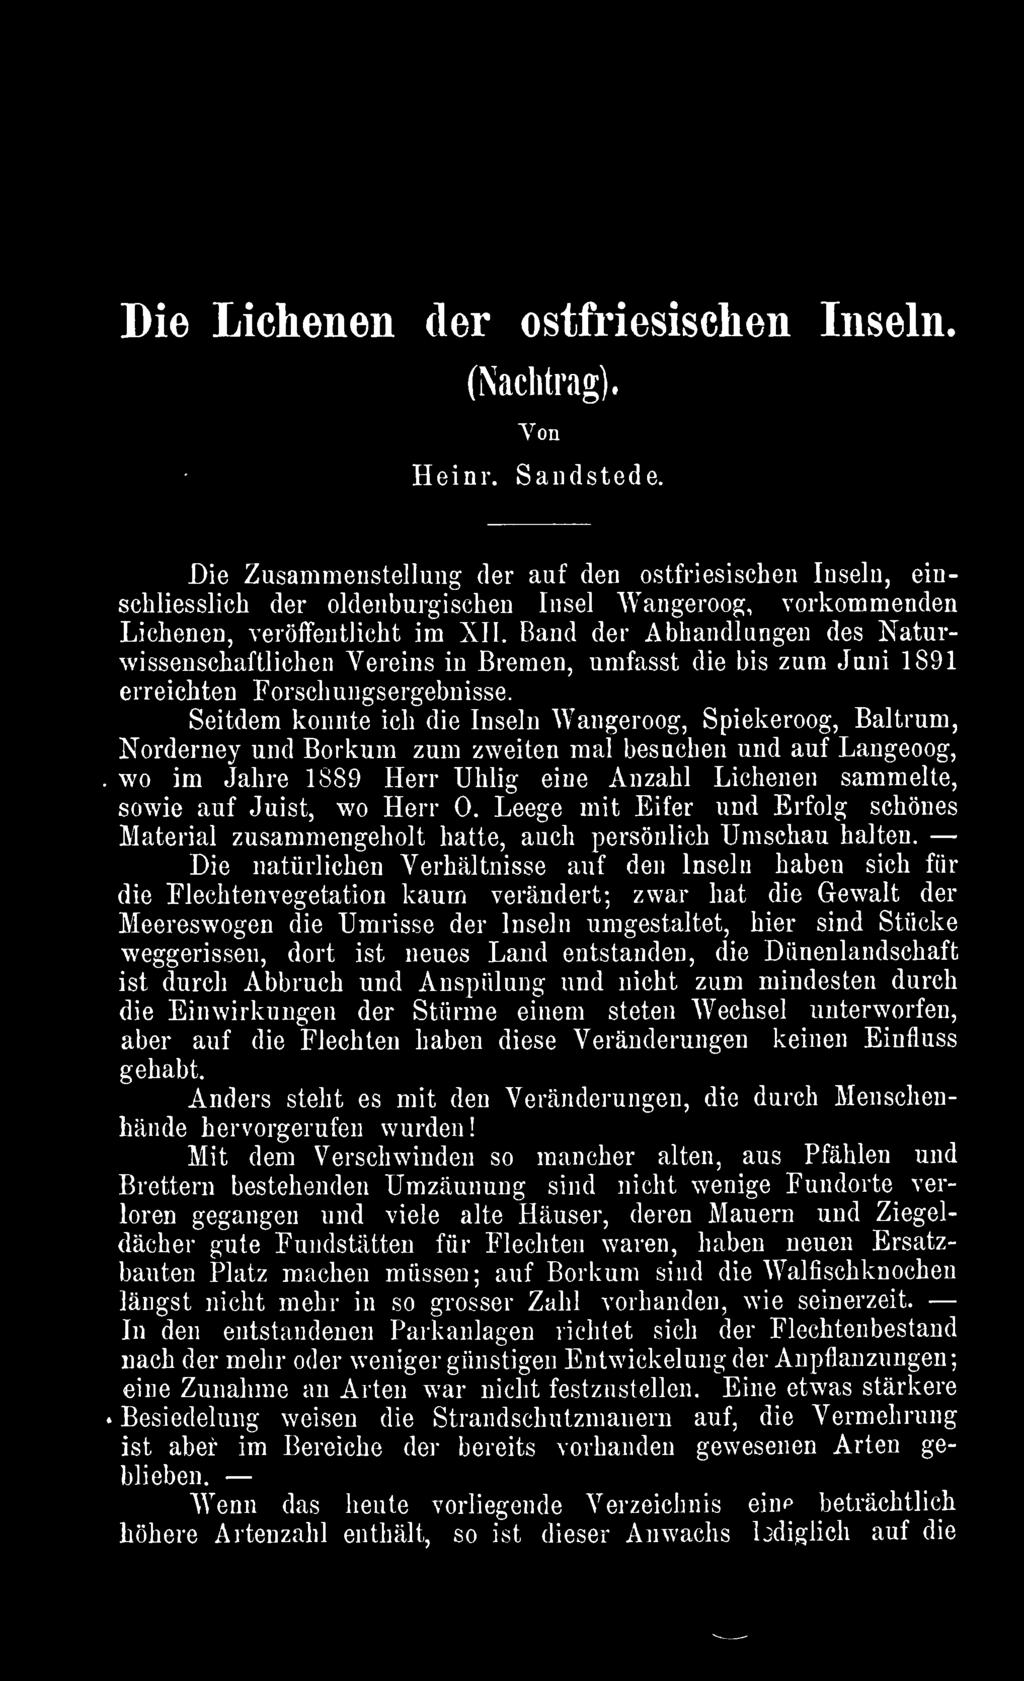 Band der Abhandlungen des Naturwissenschaftlichen Vereins in Bremen, umfasst die bis zum Juni 1891 erreichten Forschungsergebnisse.